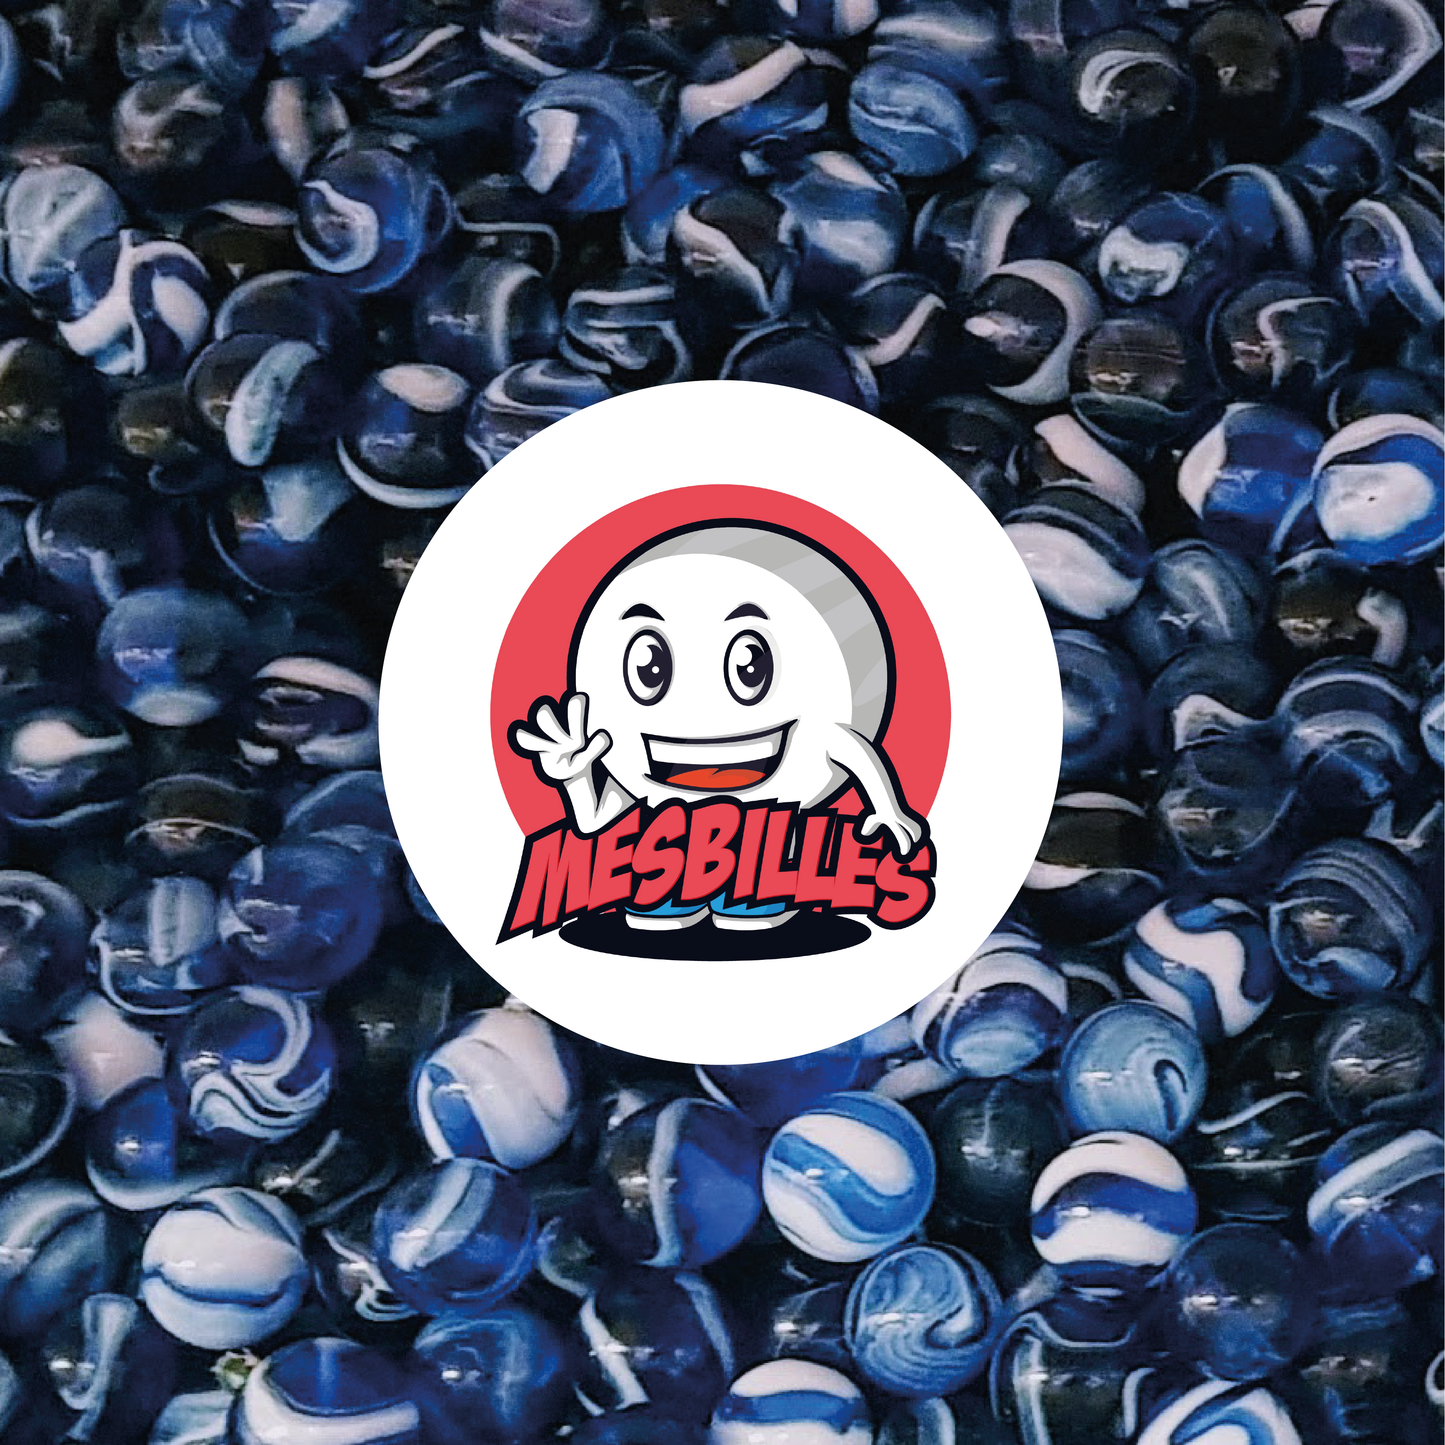 Image de la Mascotte MesBilles entourée de Billes Spot 16 mm - Verre Translucide Bleu strié de Blanc